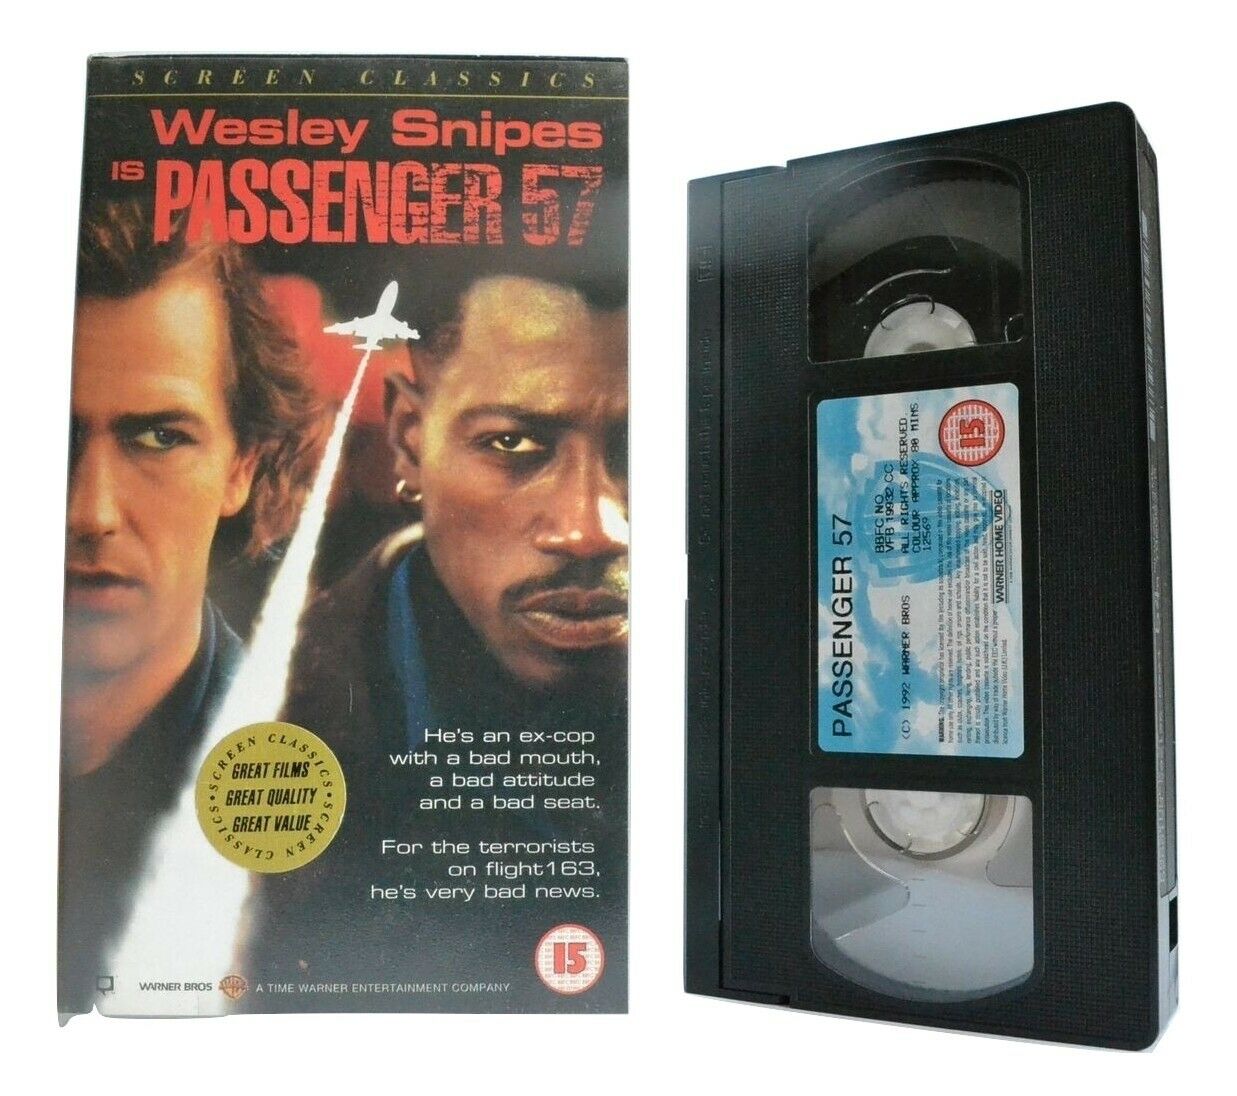 Passenger 57: Wesley Snipes - Action Debut (Terrorist Take Down) Thriller - VHS-